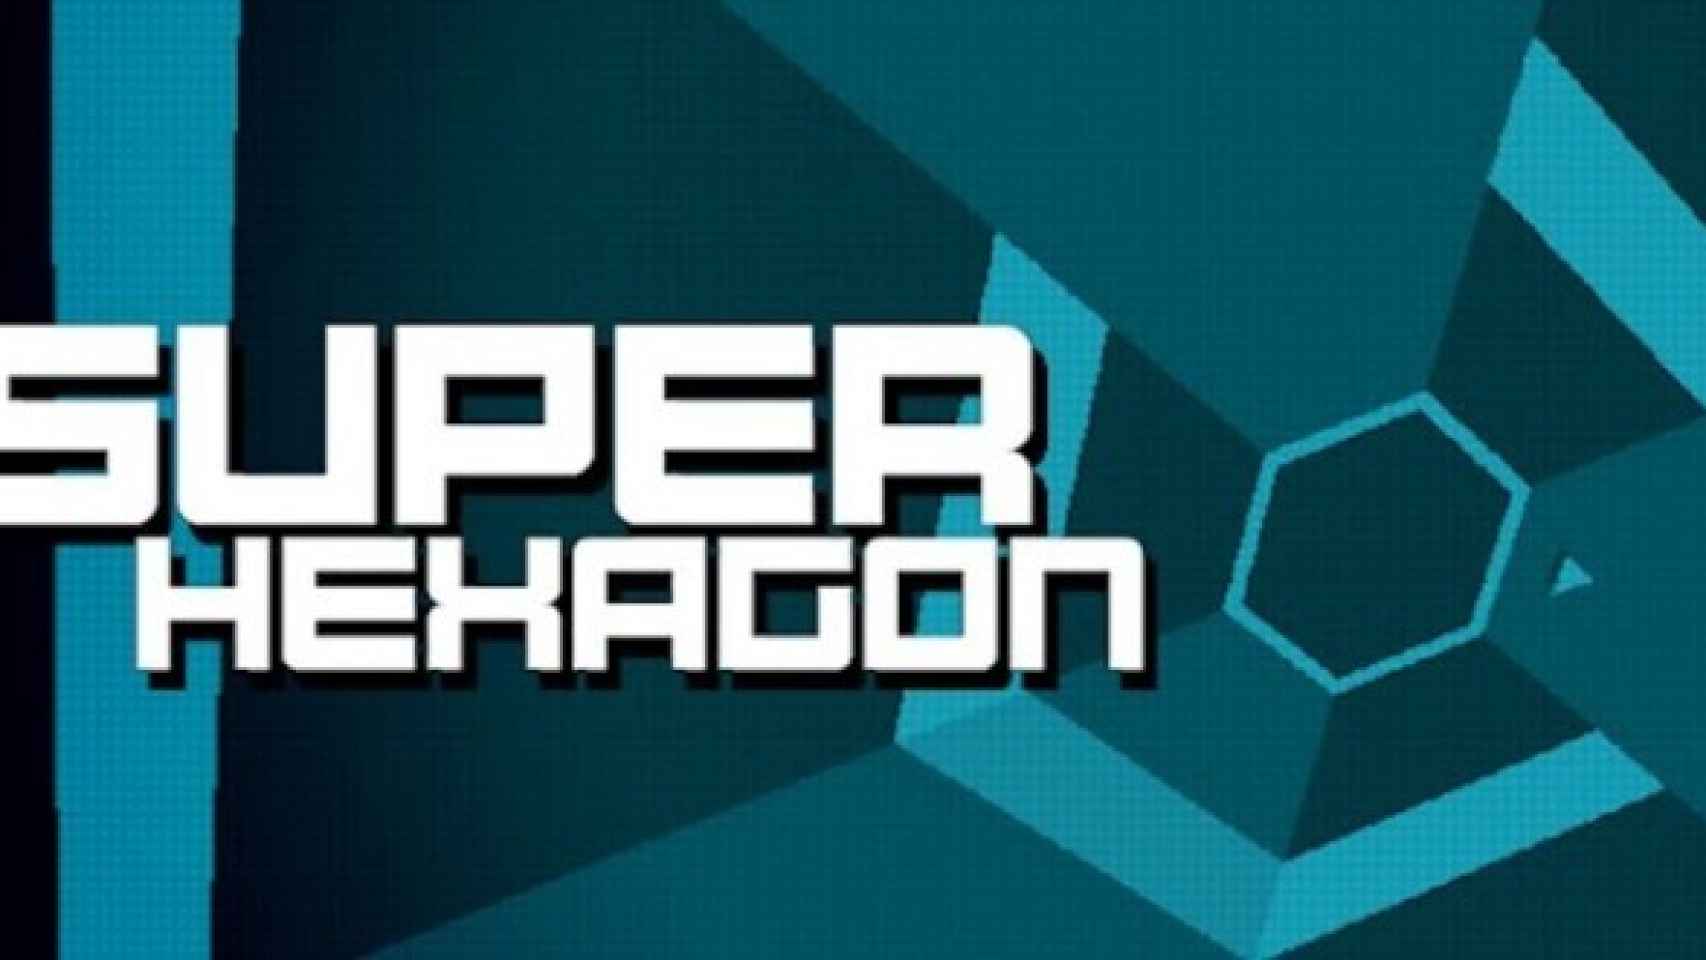 Super Hexagon es el mayor desafío jugable que puedes encontrar en Android